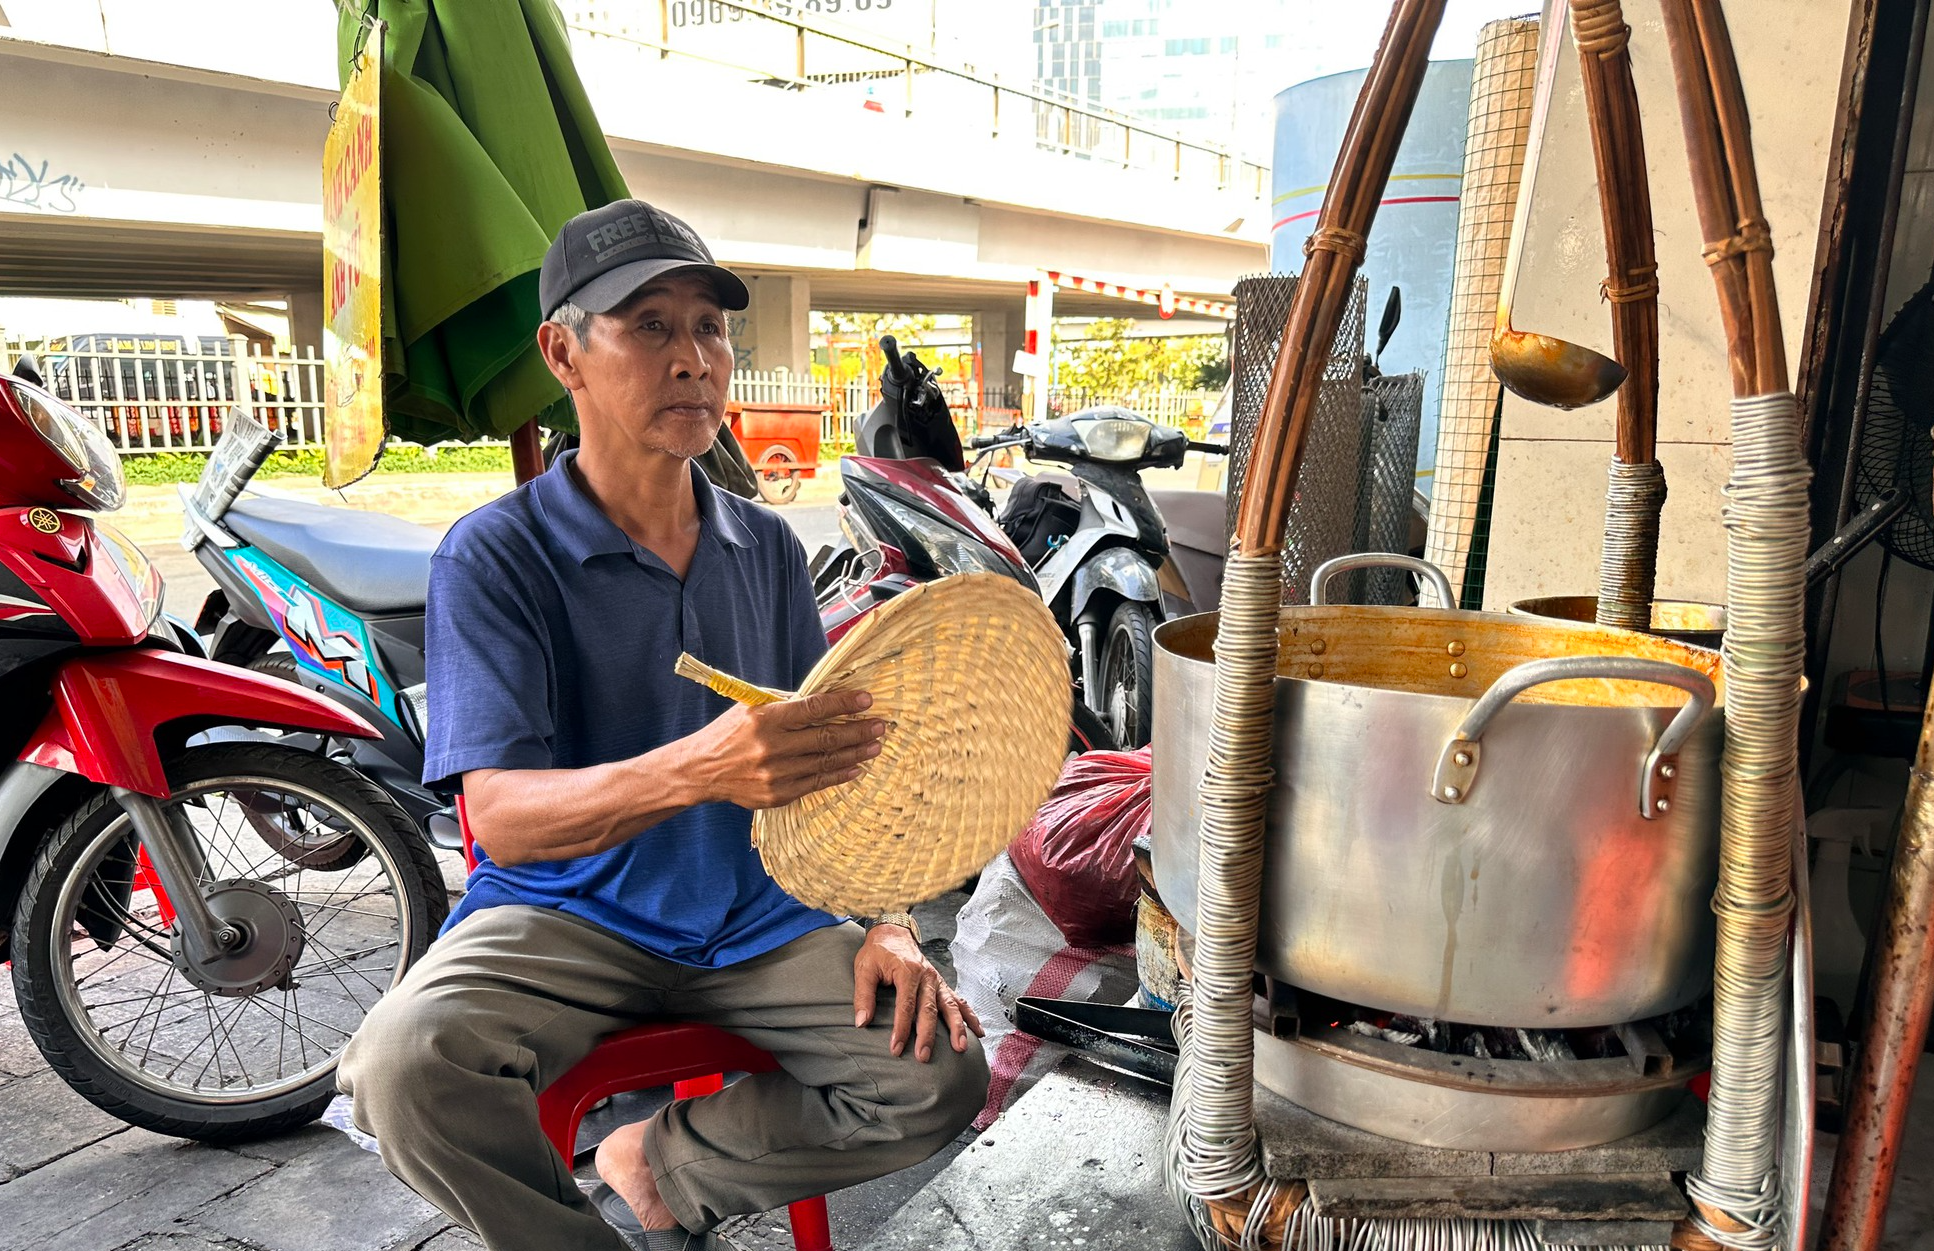 Cả nhà cùng bán quán ở TP.HCM: Bánh canh cua ‘không nhân viên’ 40 năm khách đông mãi